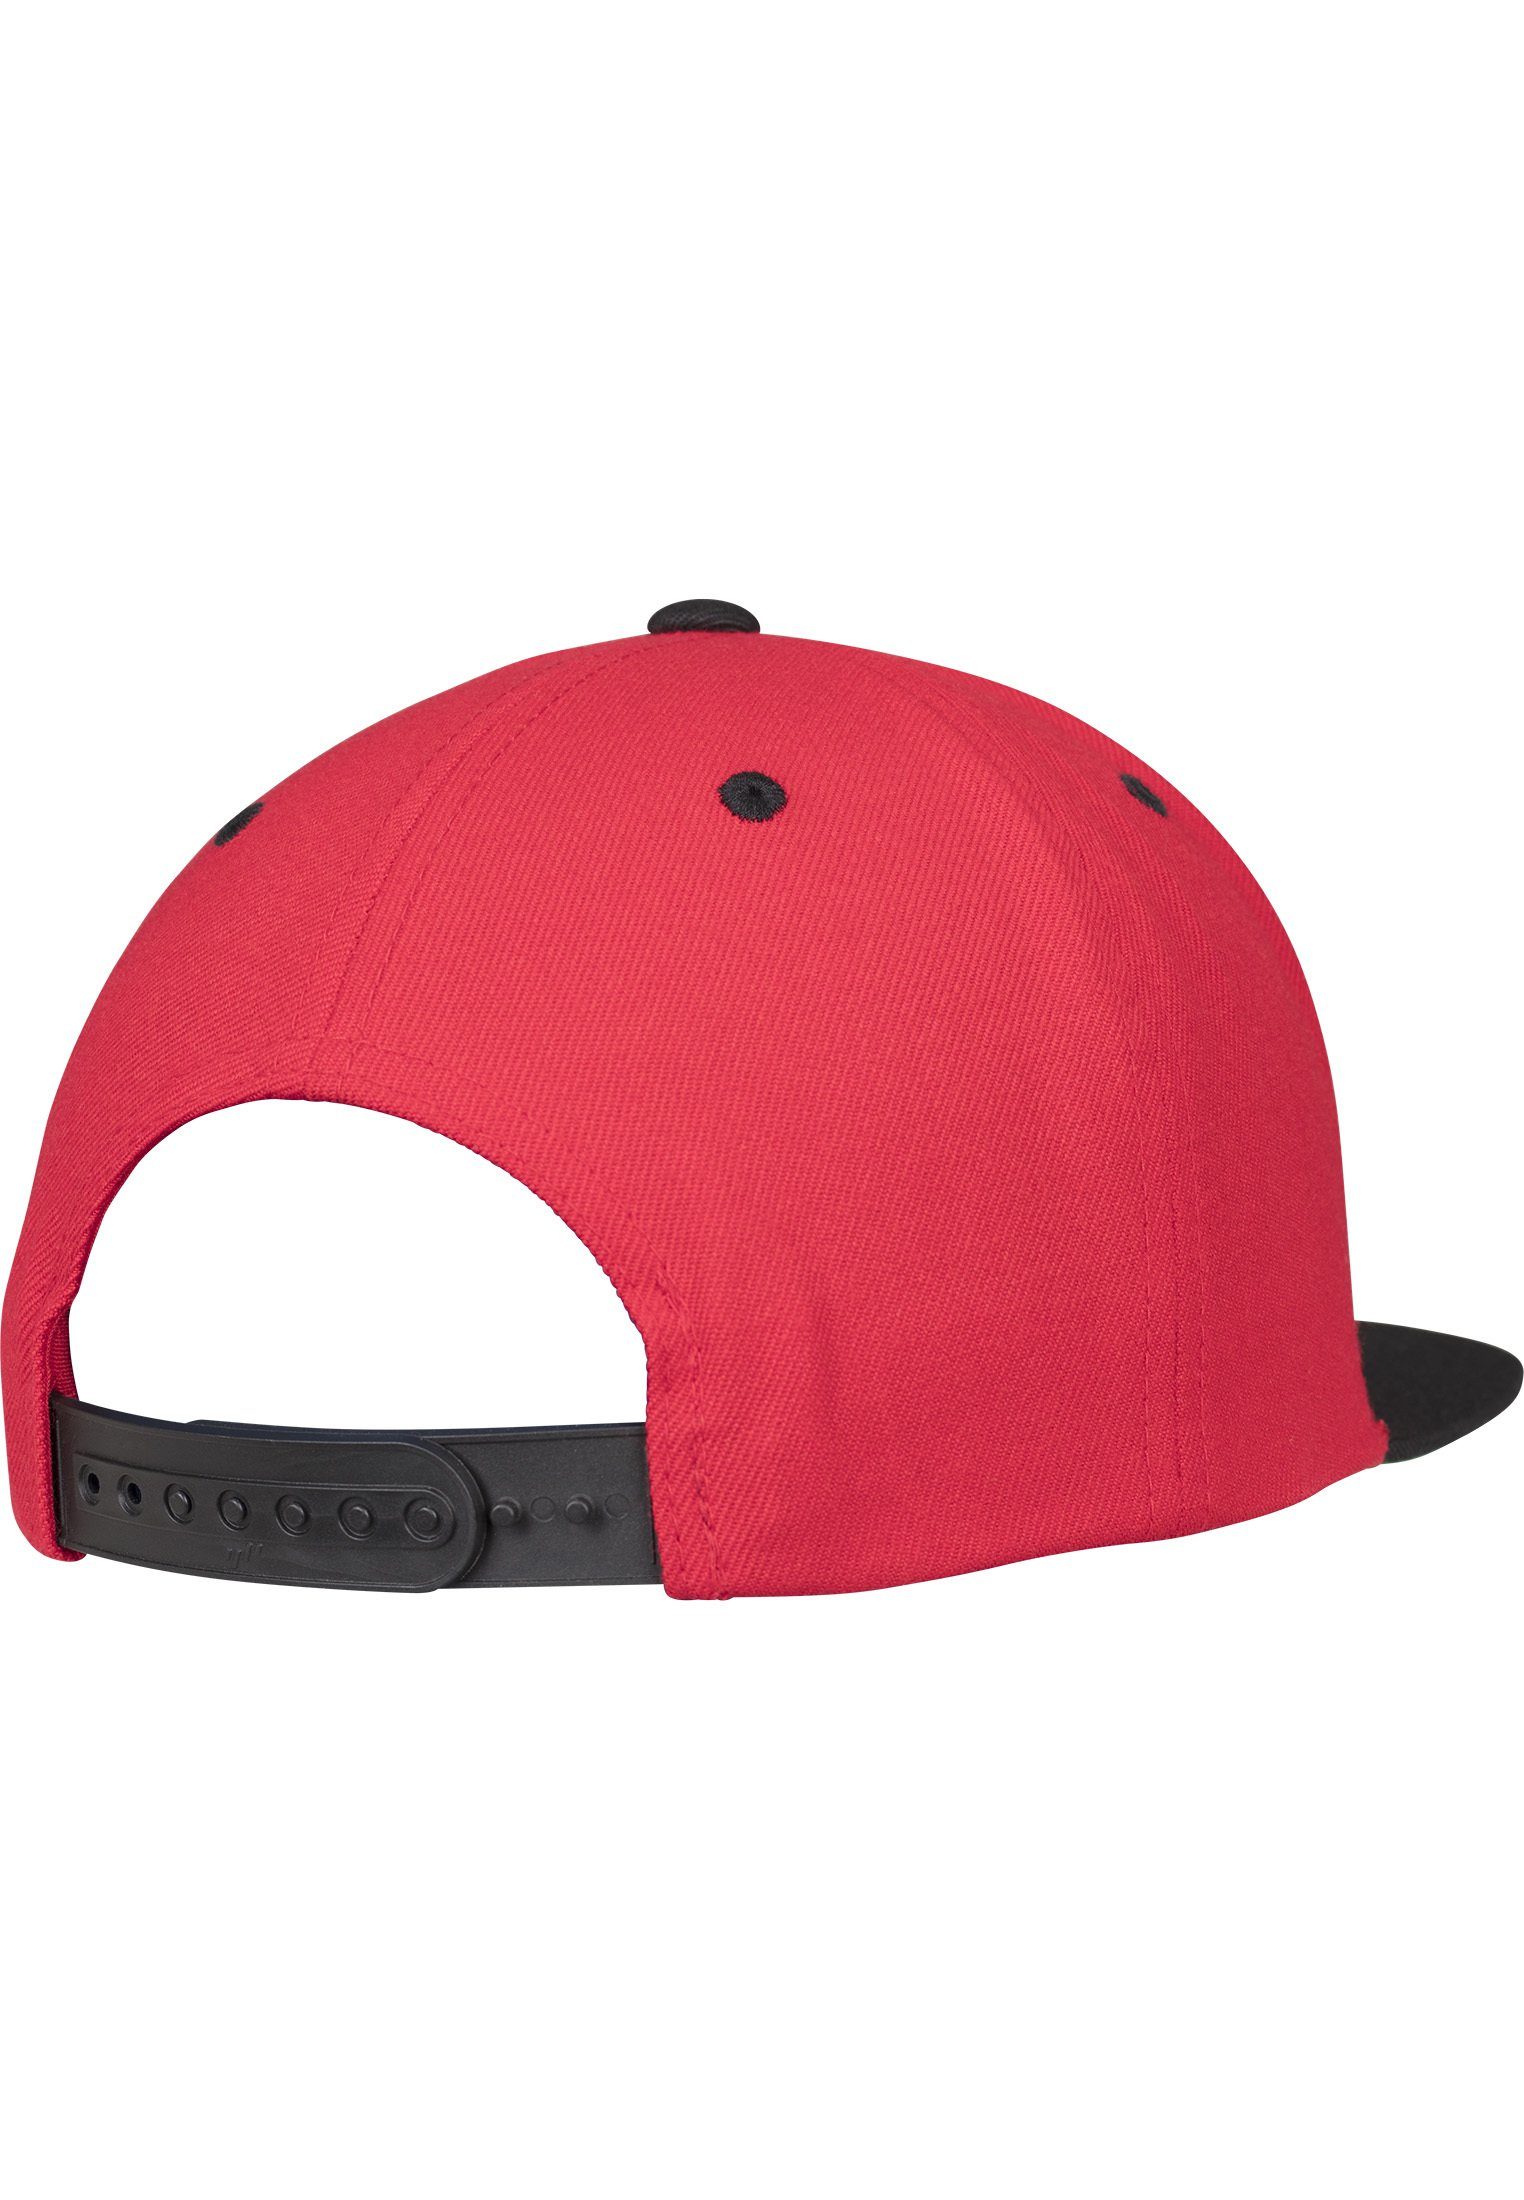 Cap red/black Flexfit Flex Snapback 2-Tone Snapback Classic